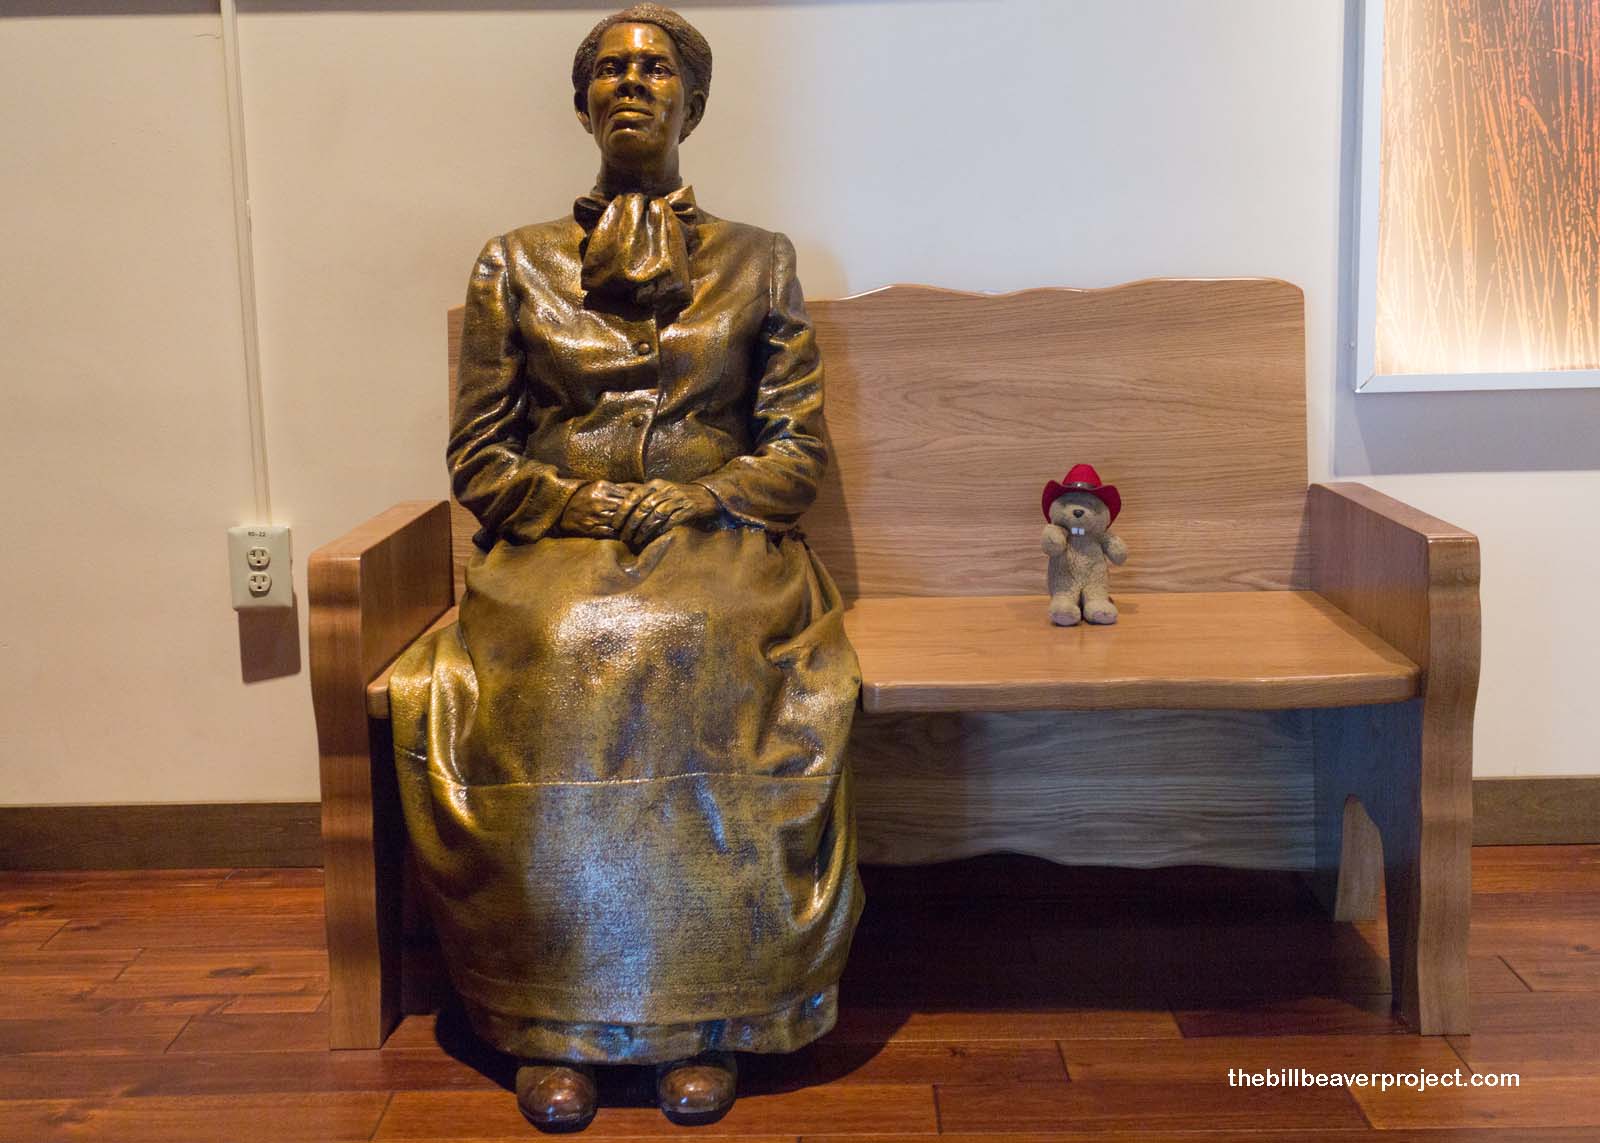 Harriet Tubman Underground Railroad National Historical Park